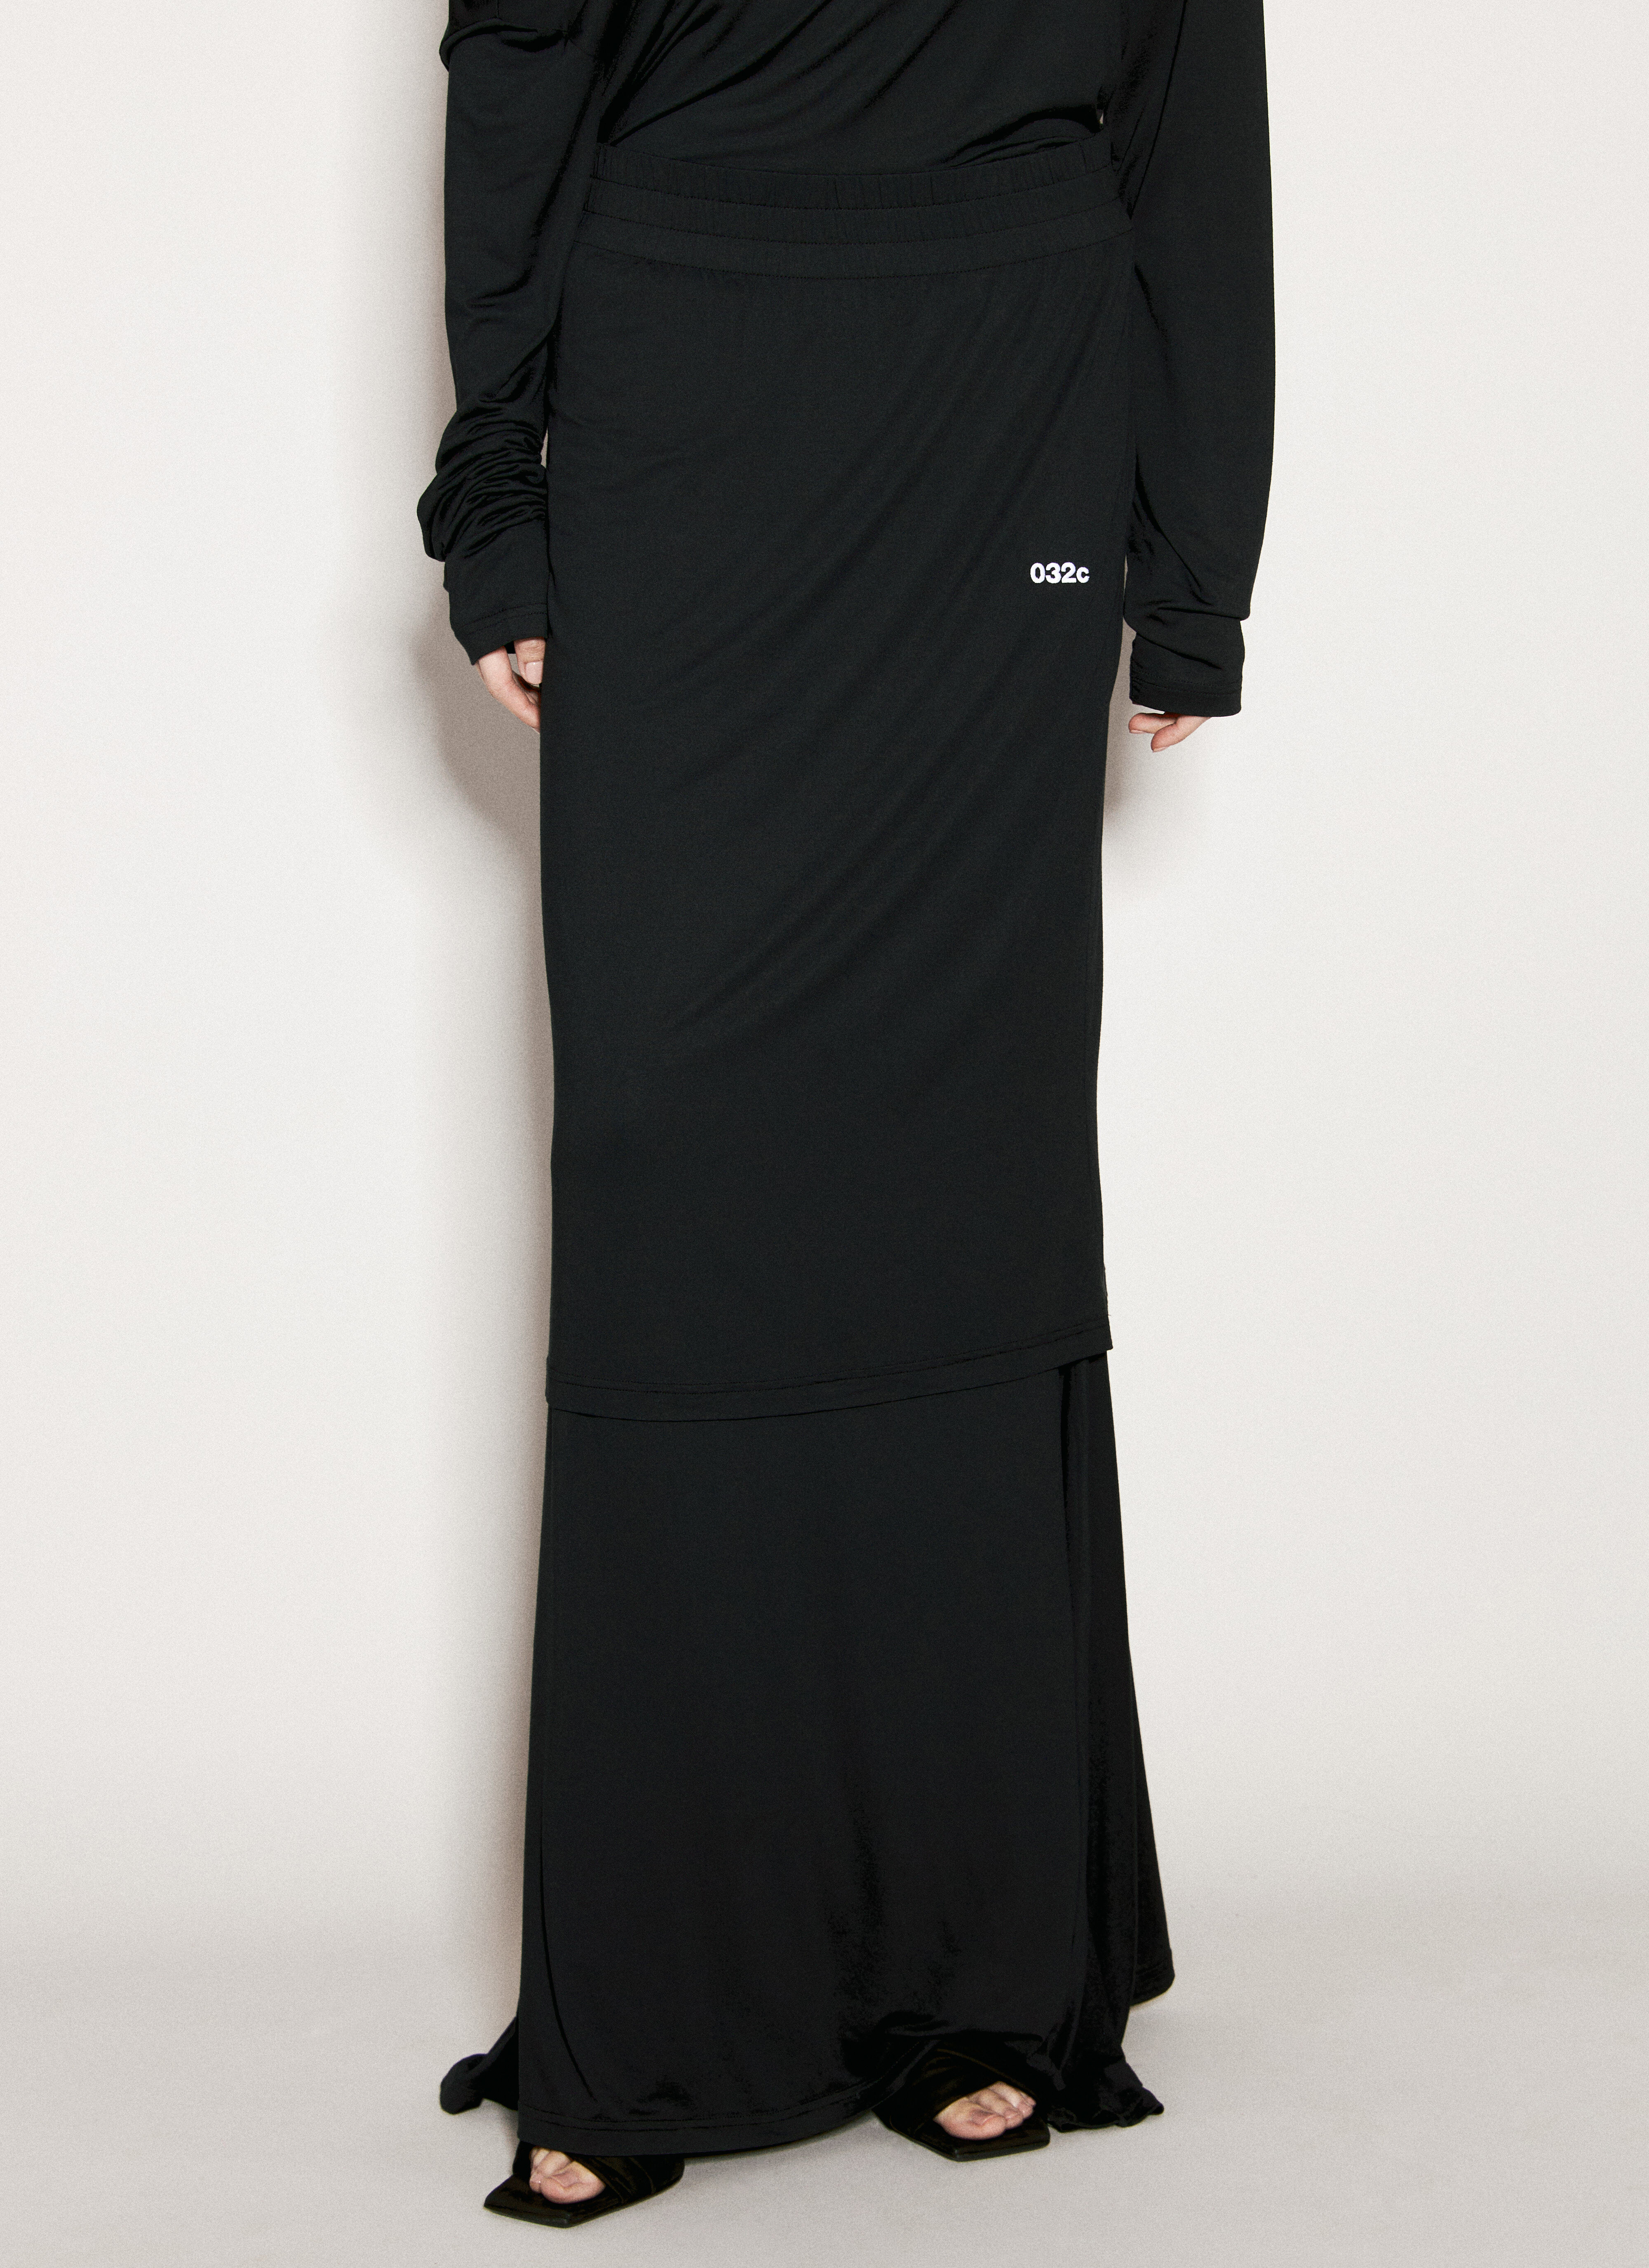 032C Daydream 叠层长款半身裙 黑色 cee0356002